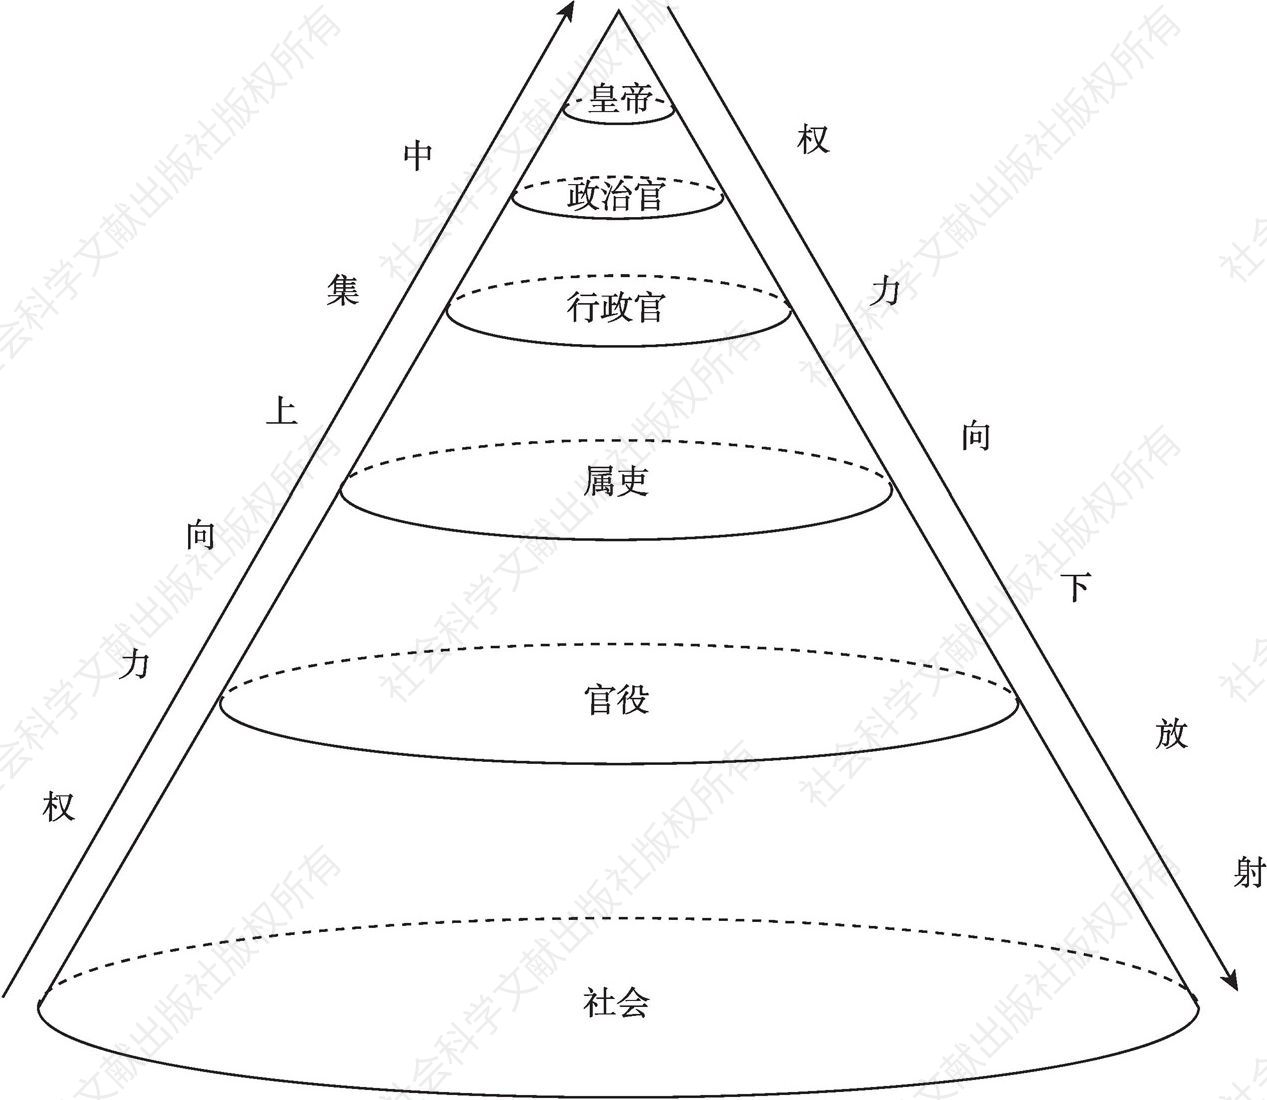 图1 秦汉王朝政治权力结构